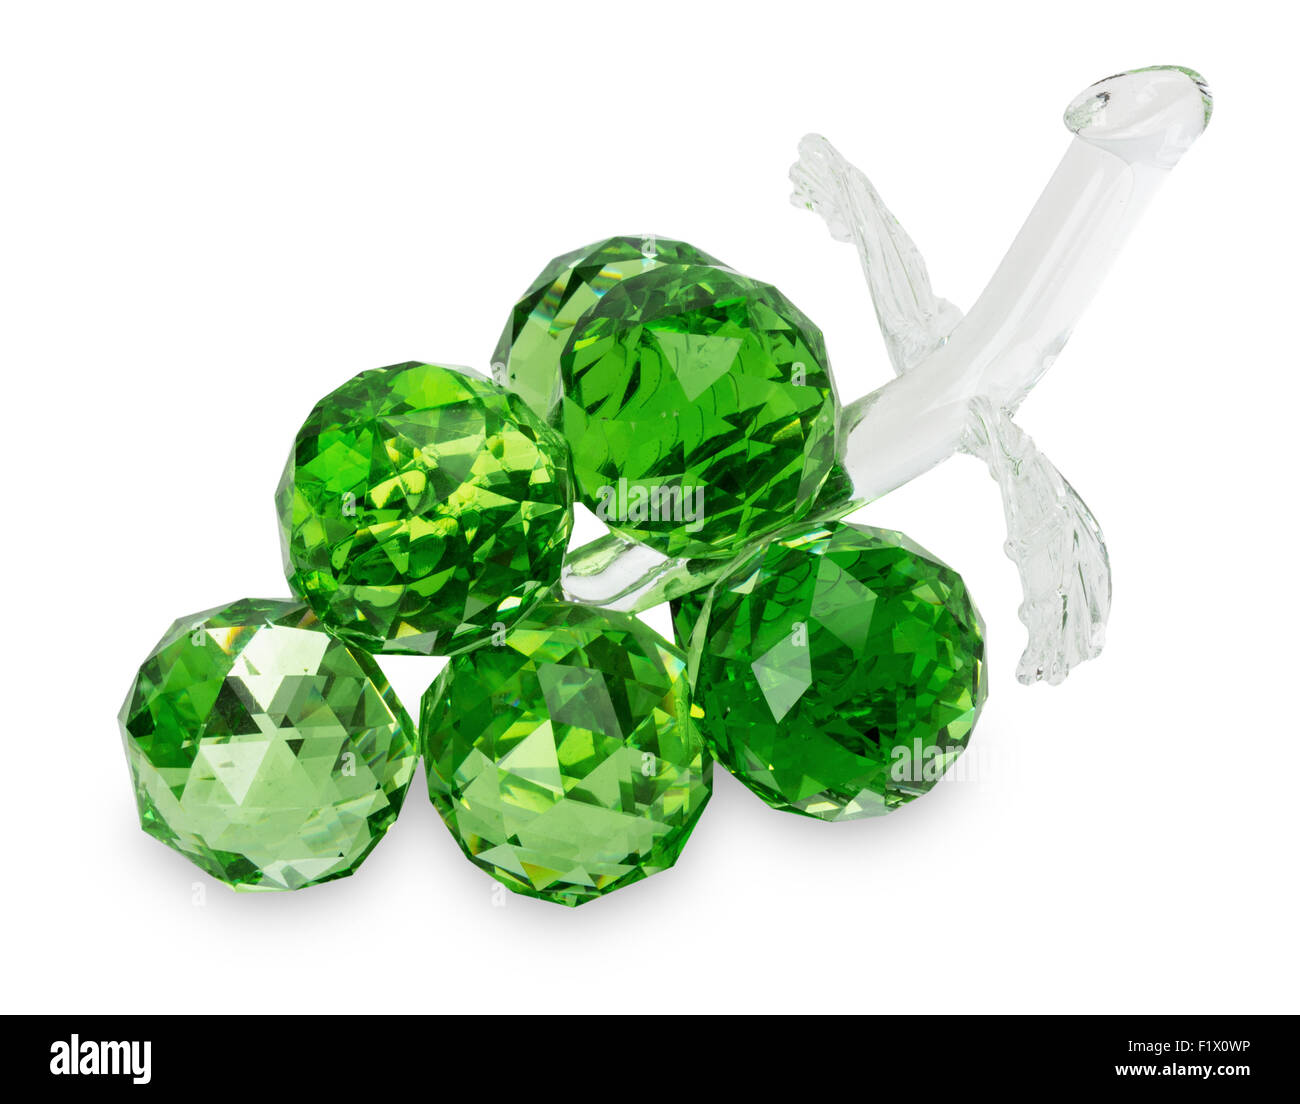 dekoratives Glas grüne Trauben auf dem weißen Hintergrund isoliert. Stockfoto